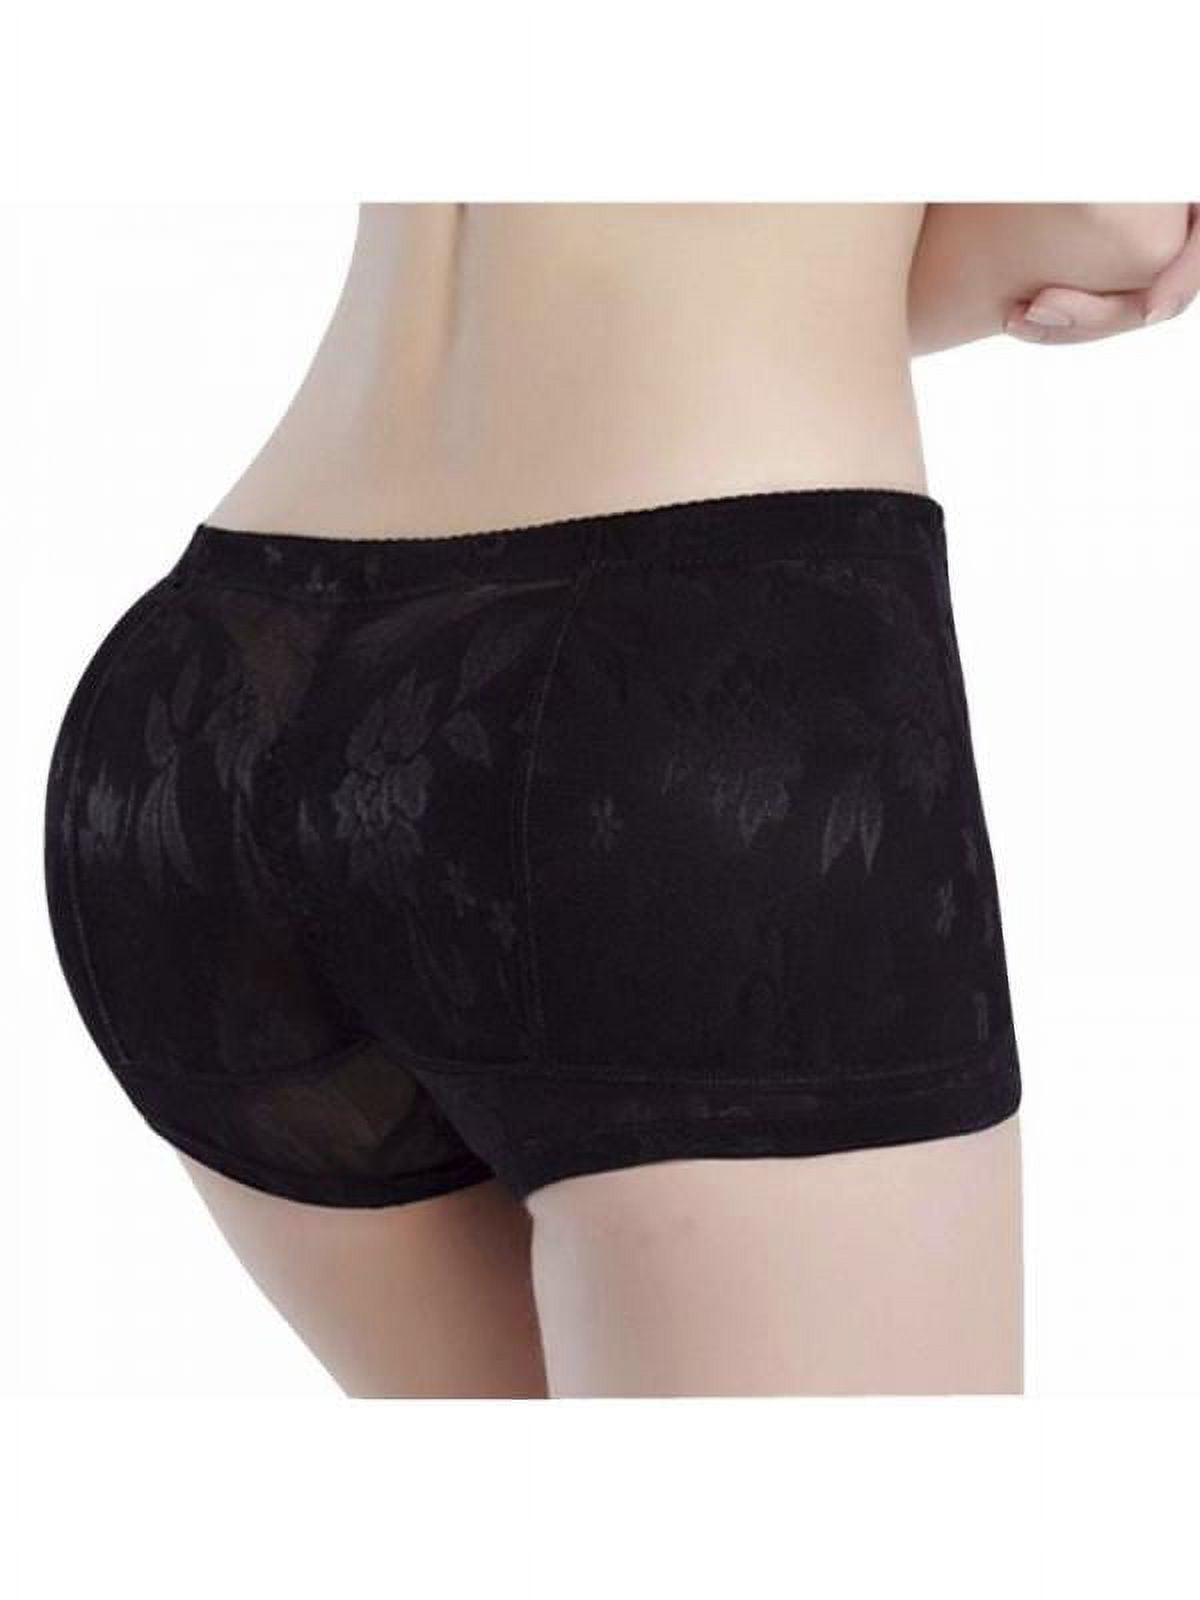 MISS MOLY Women Lace Padded Seamless Butt Lifter Hip Enhancer